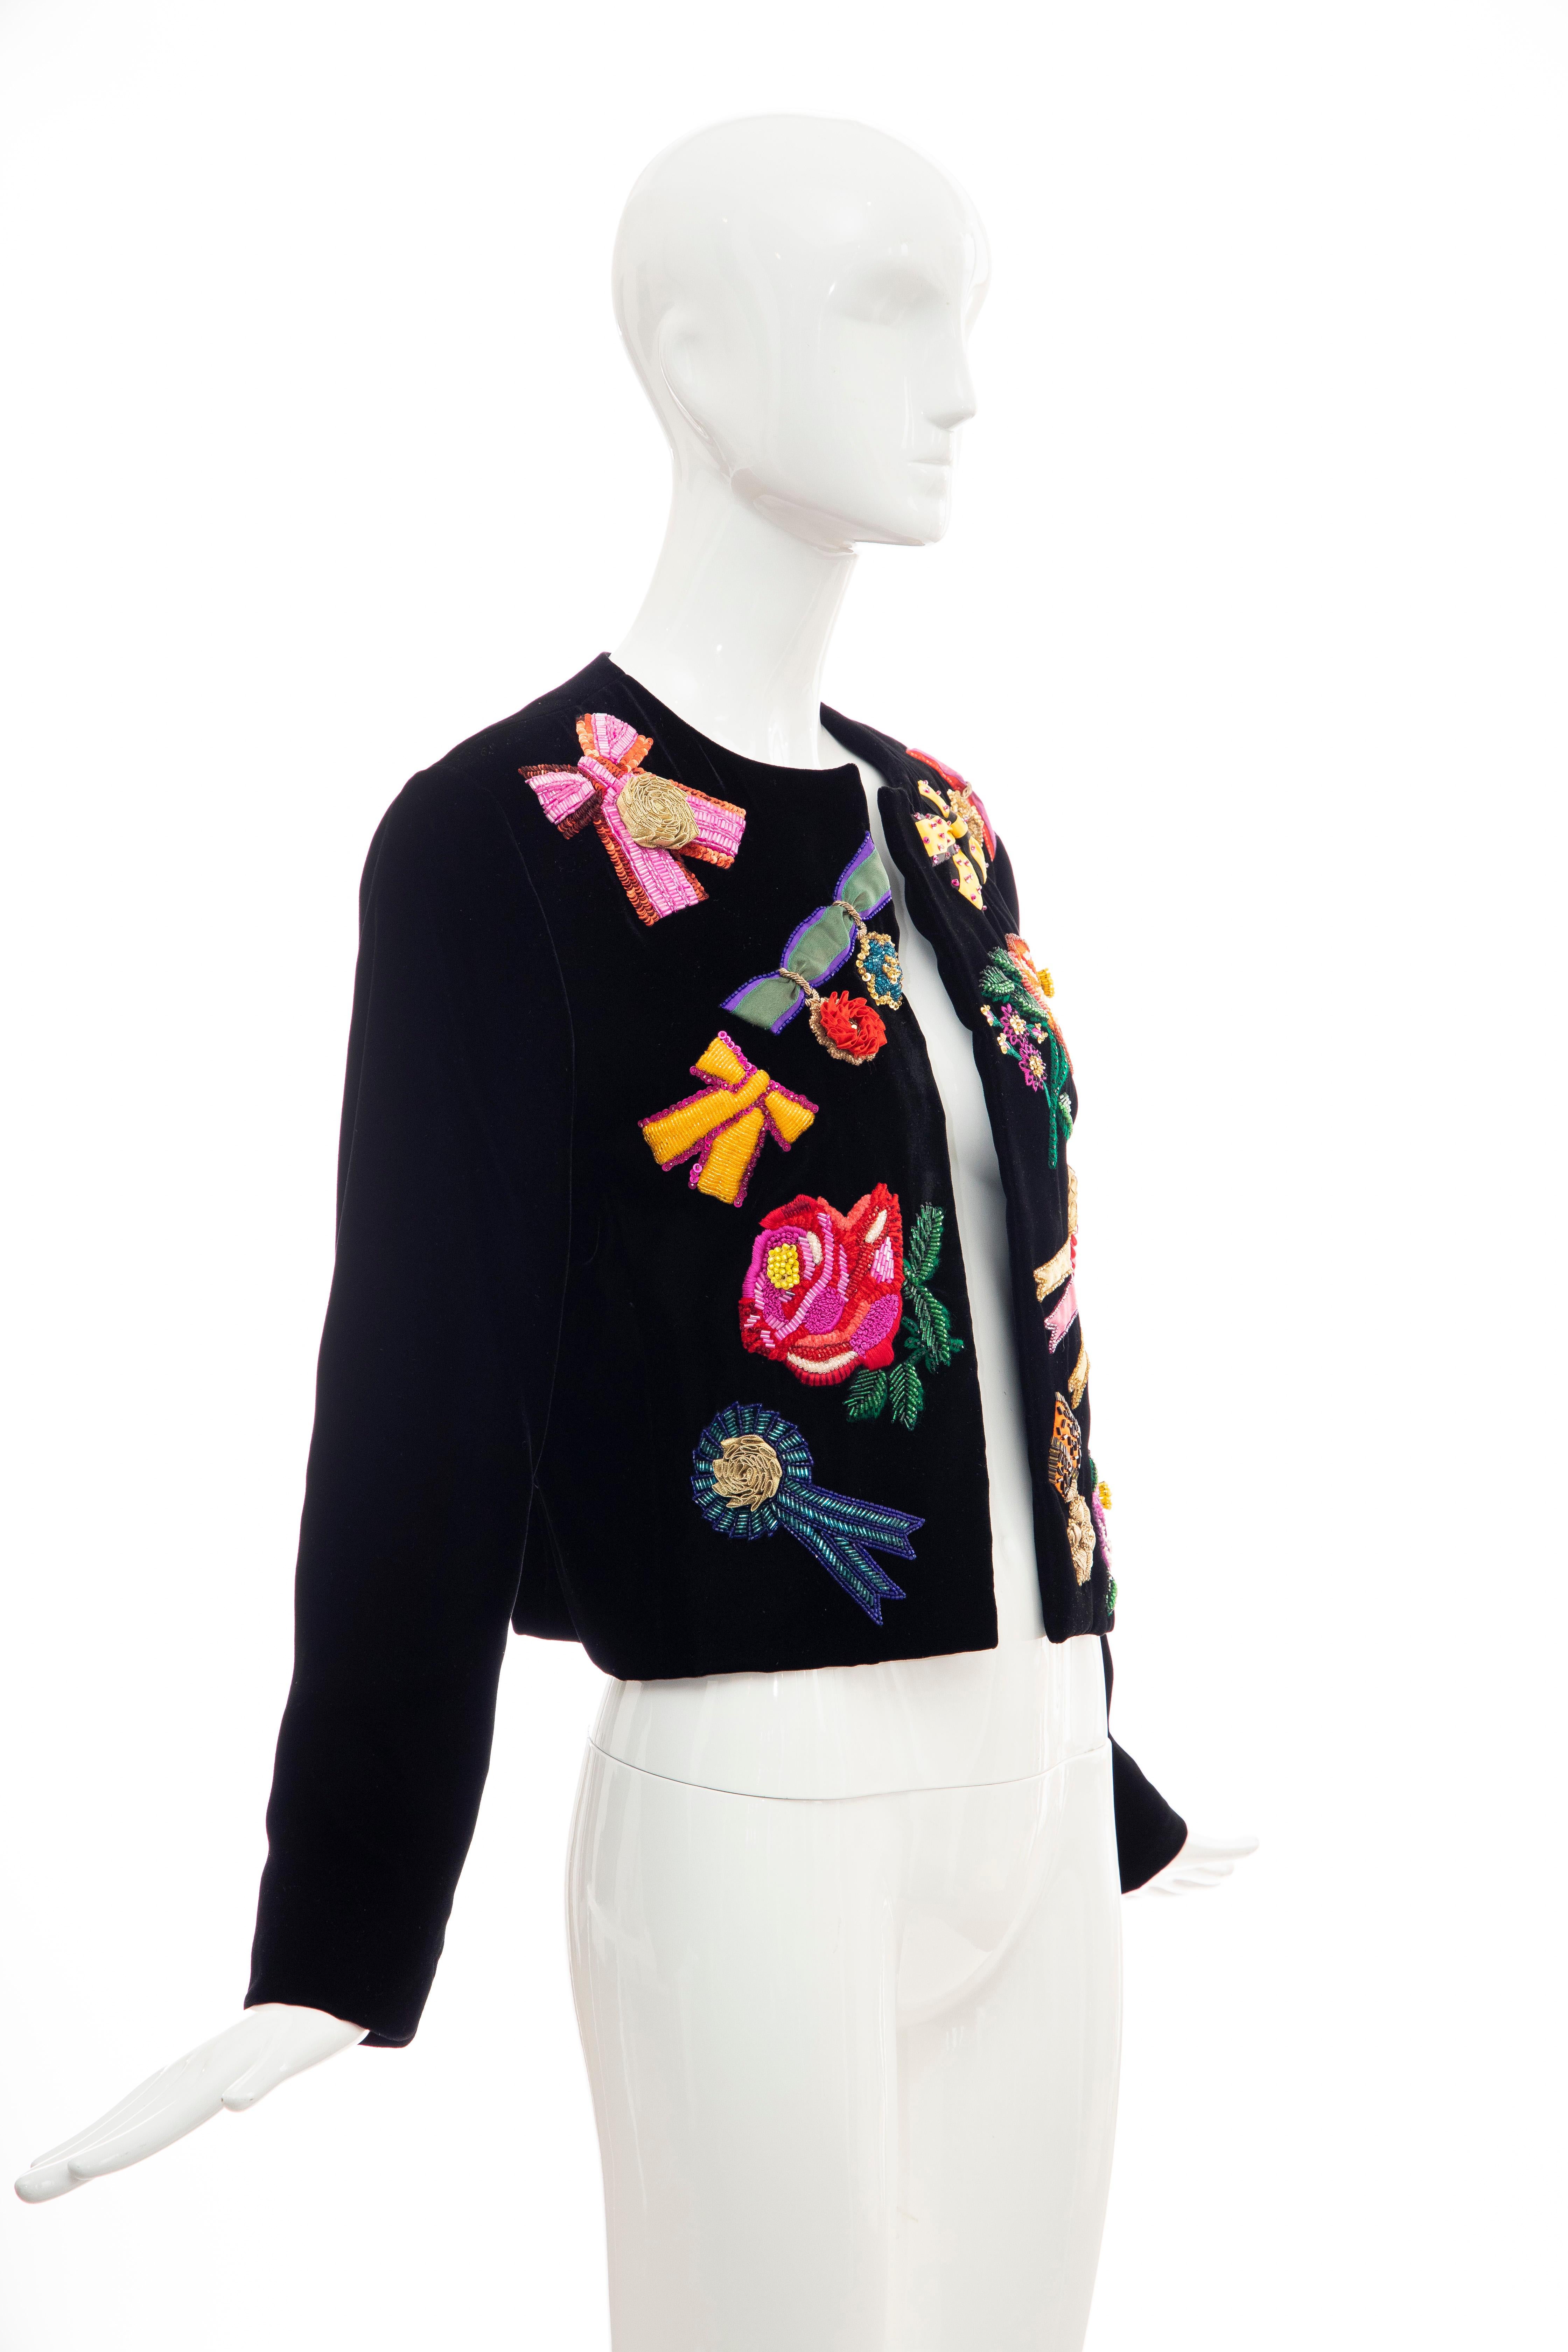 Women's Christian Dior Marc Bohan Black Velvet Beaded Ribbon Embroidery Jacket, Fall 1988